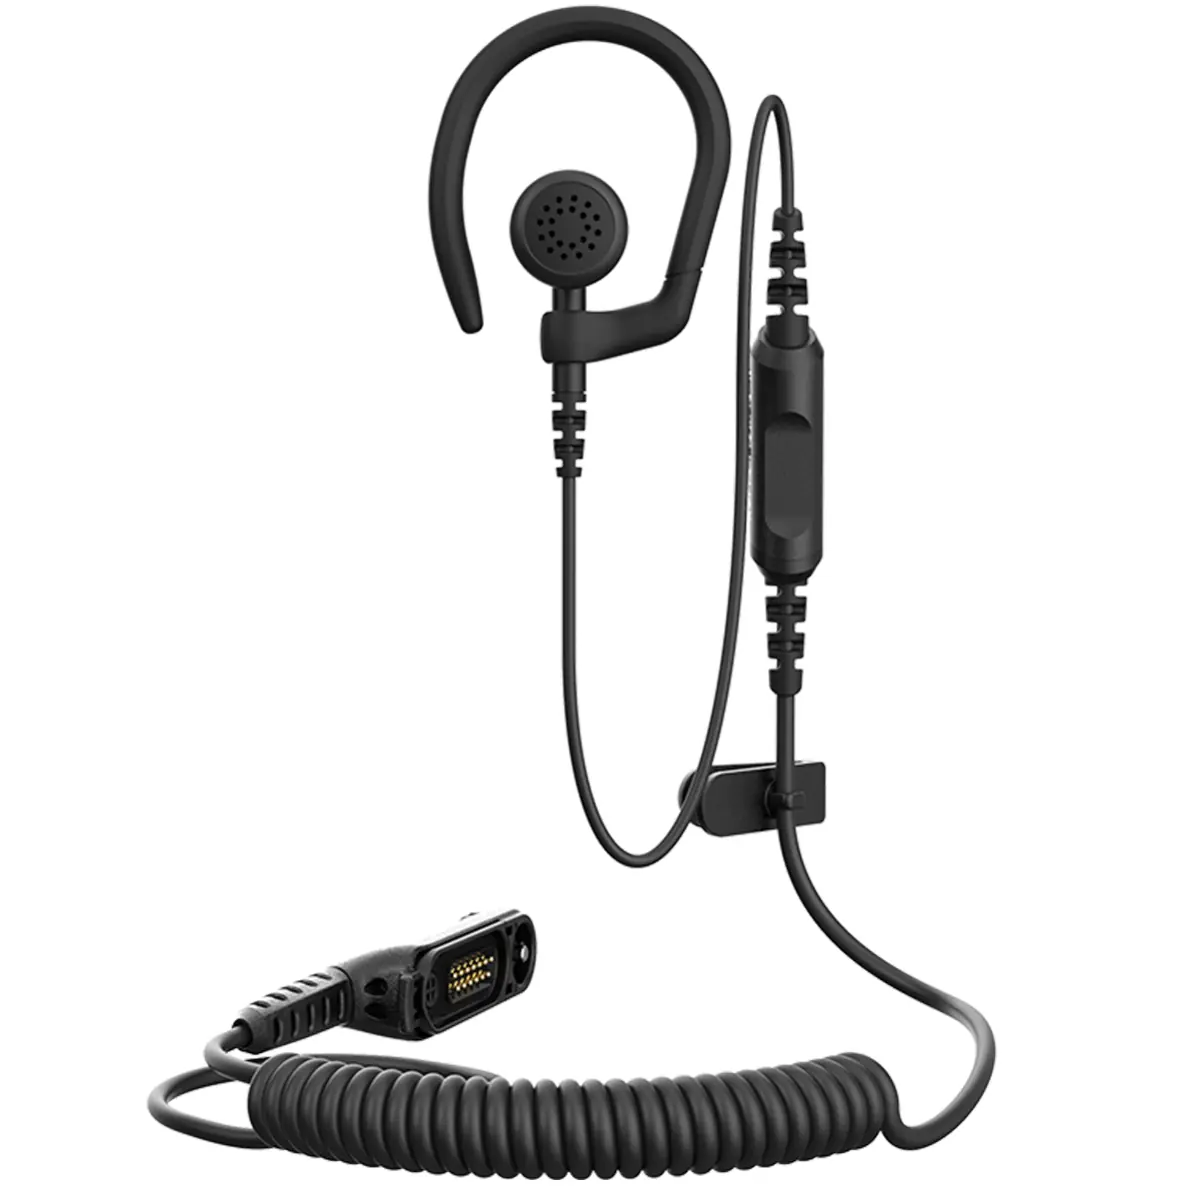 Comfort-headset voor portofoon  Motorola  R7 - PMLN8337